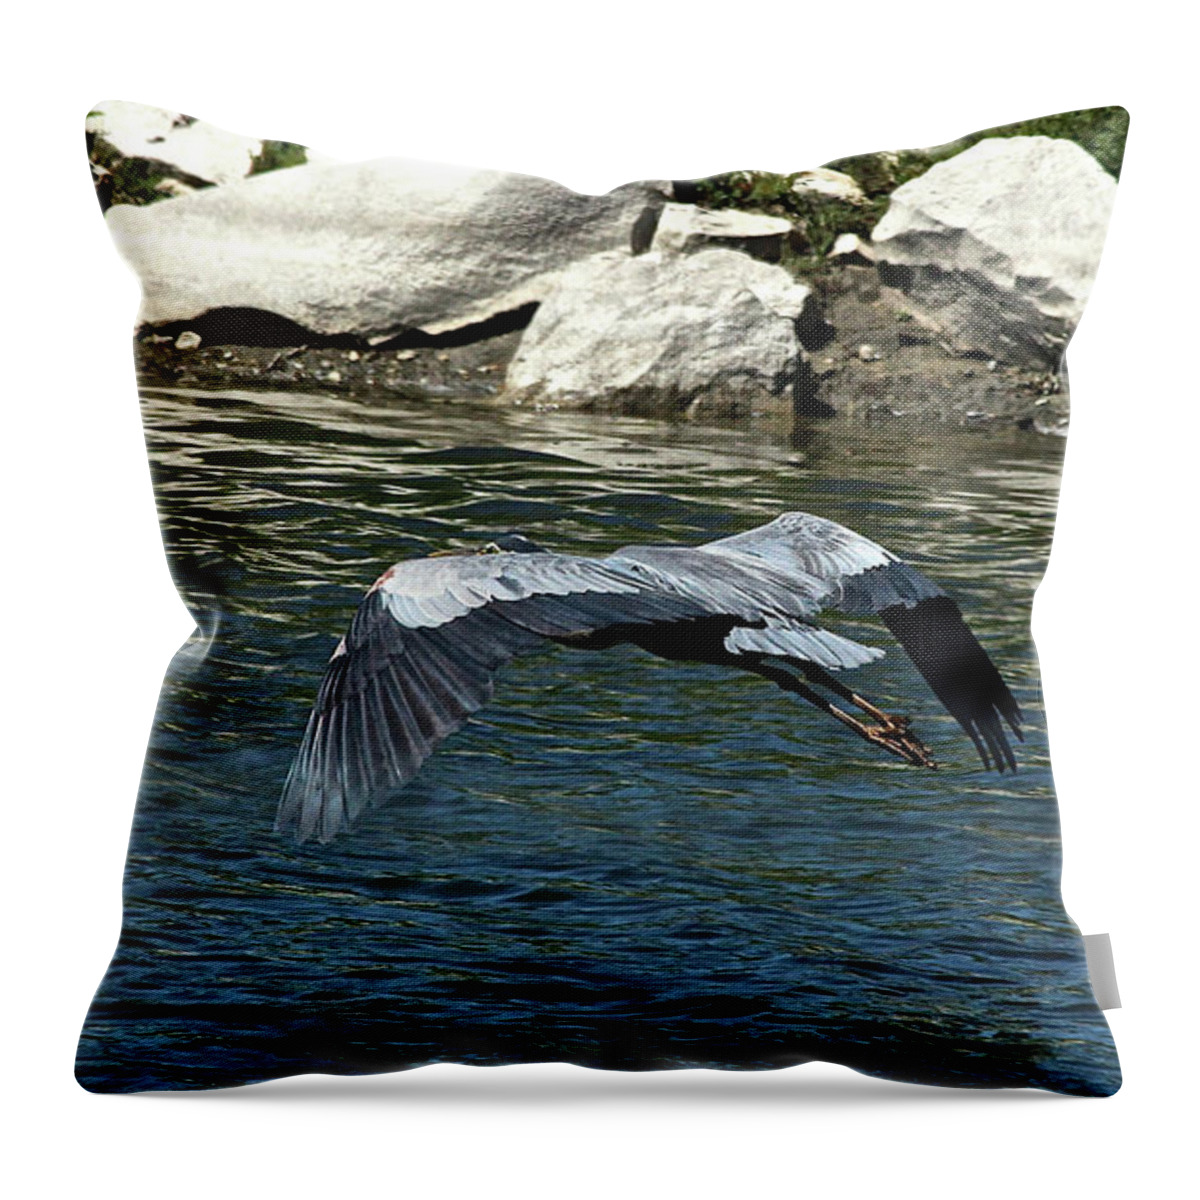 Blue Heron Throw Pillow featuring the photograph Blue Heron by Ann E Robson